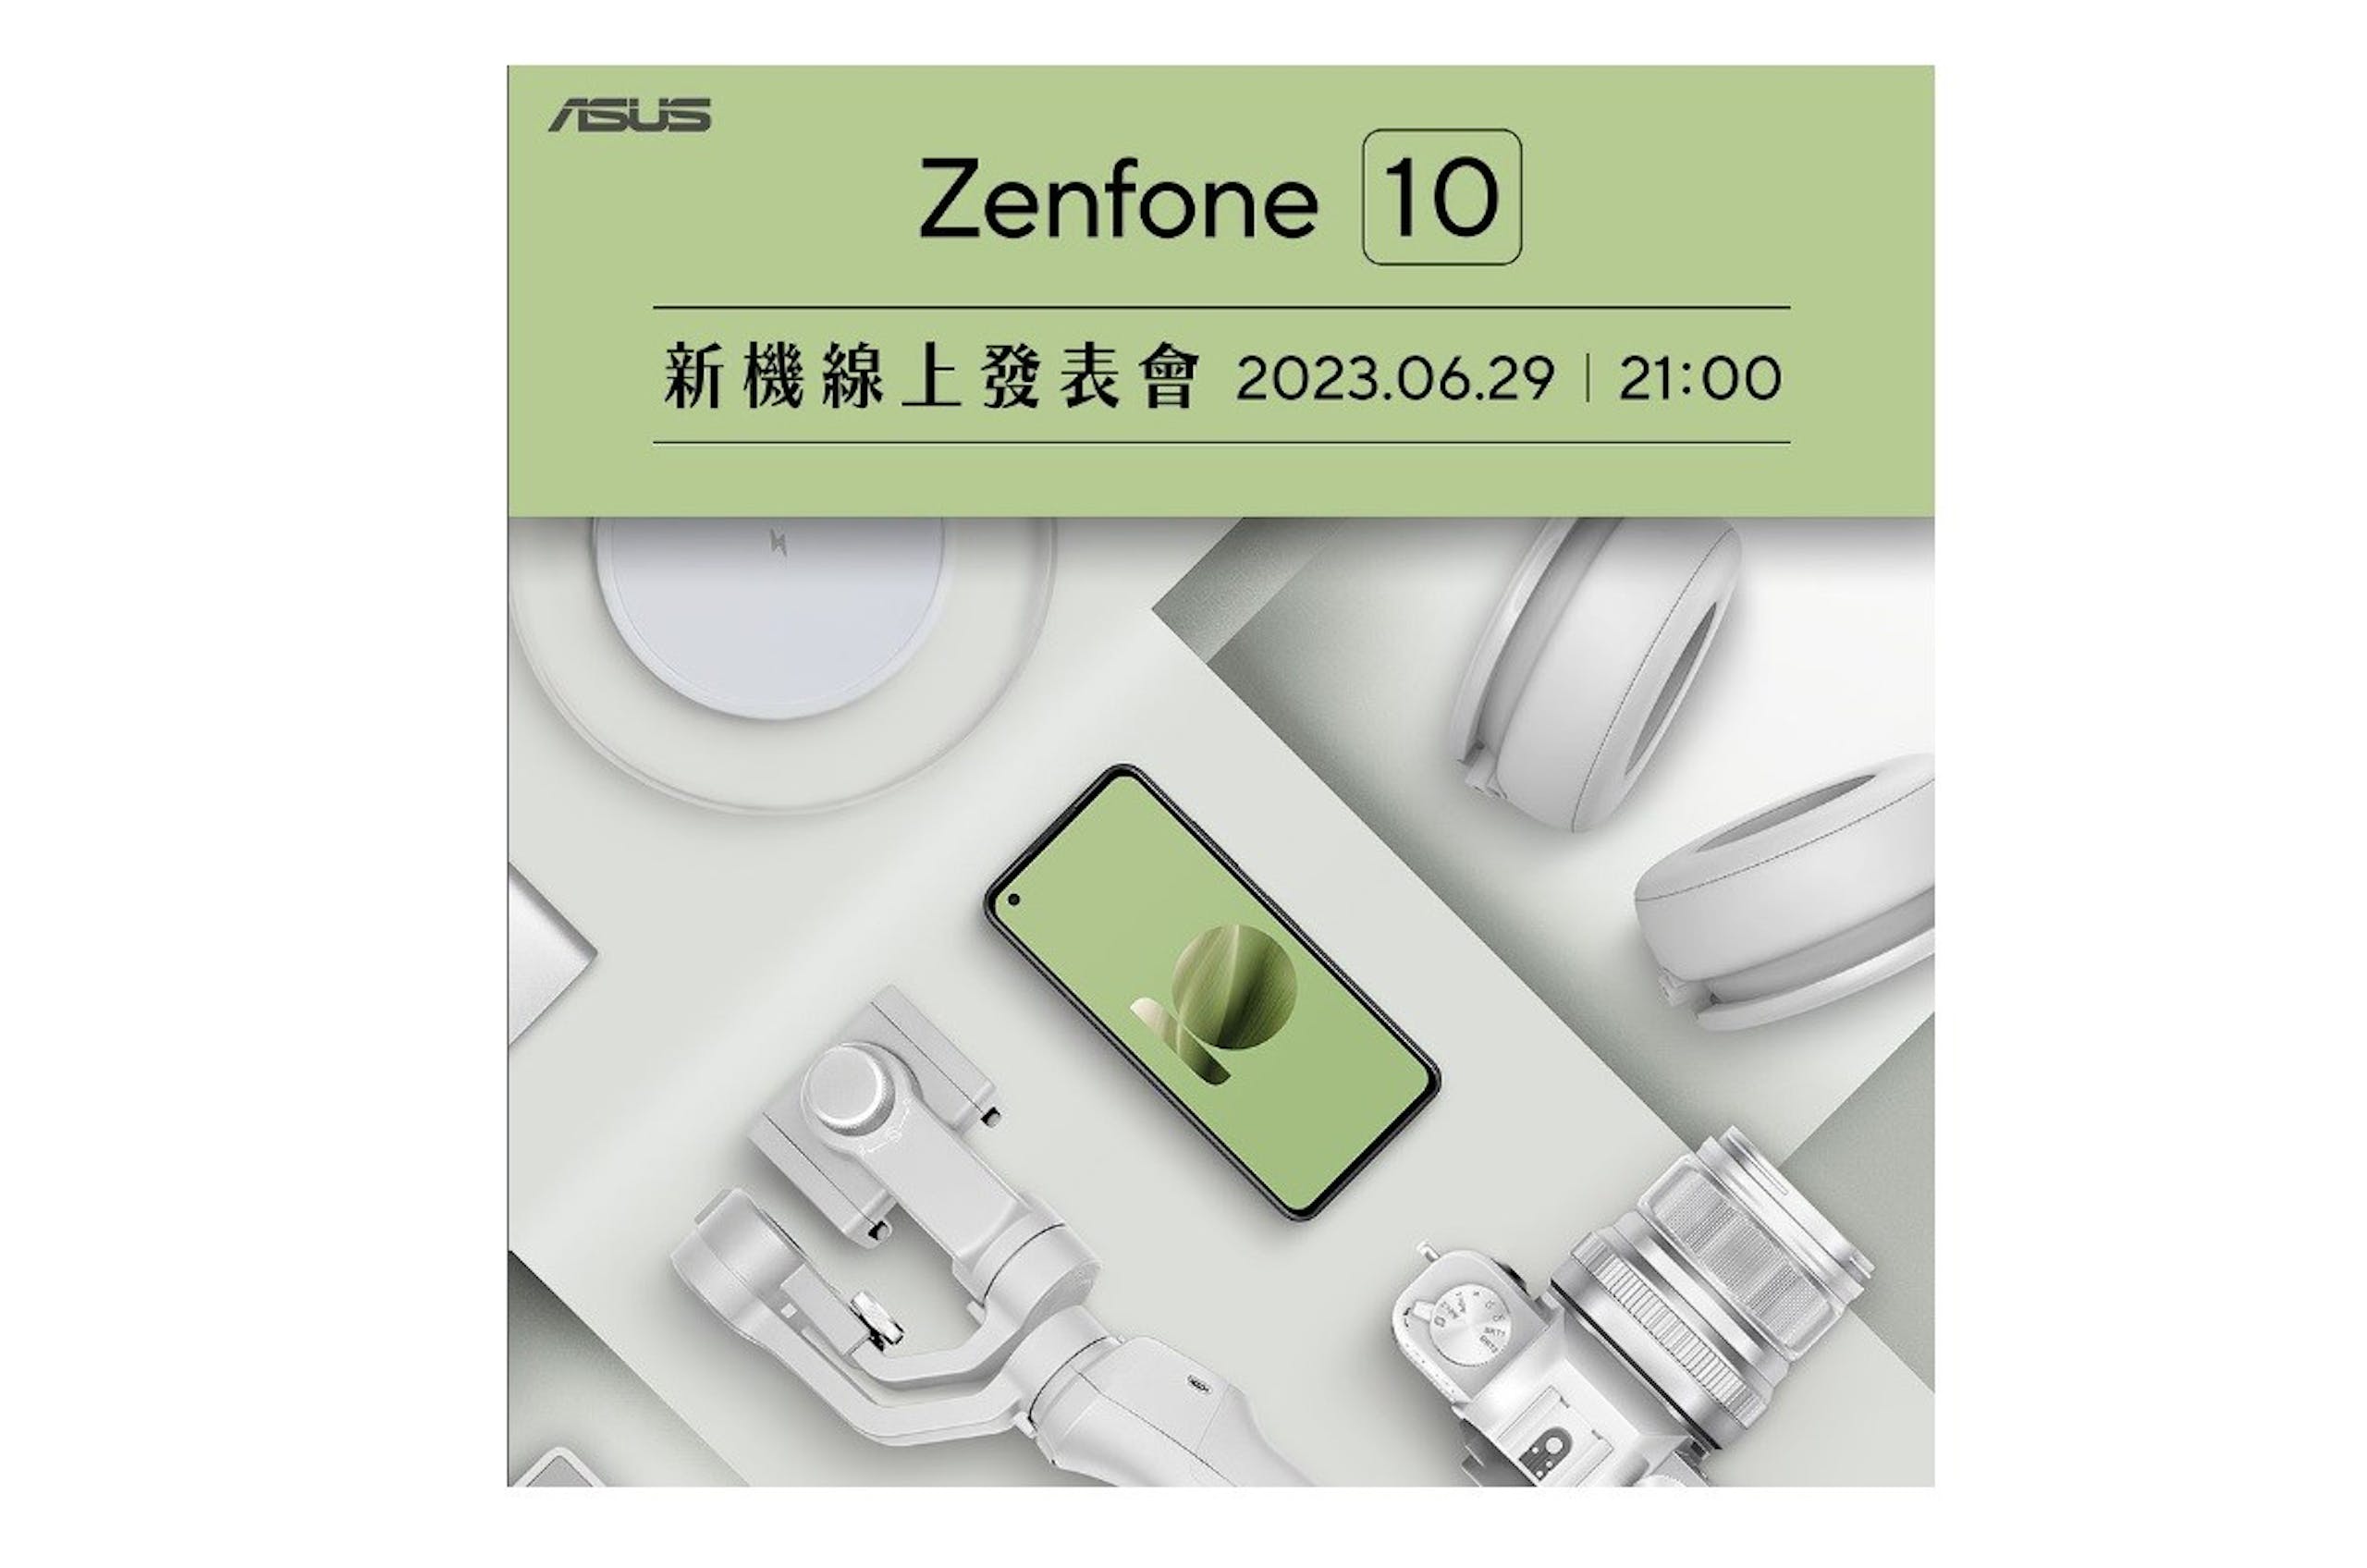 照片中提到了ASUS、Zenfone 10、新機線上發表會 2023.06.29 | 21:00，包含了產品、產品設計、牌、文本、設計